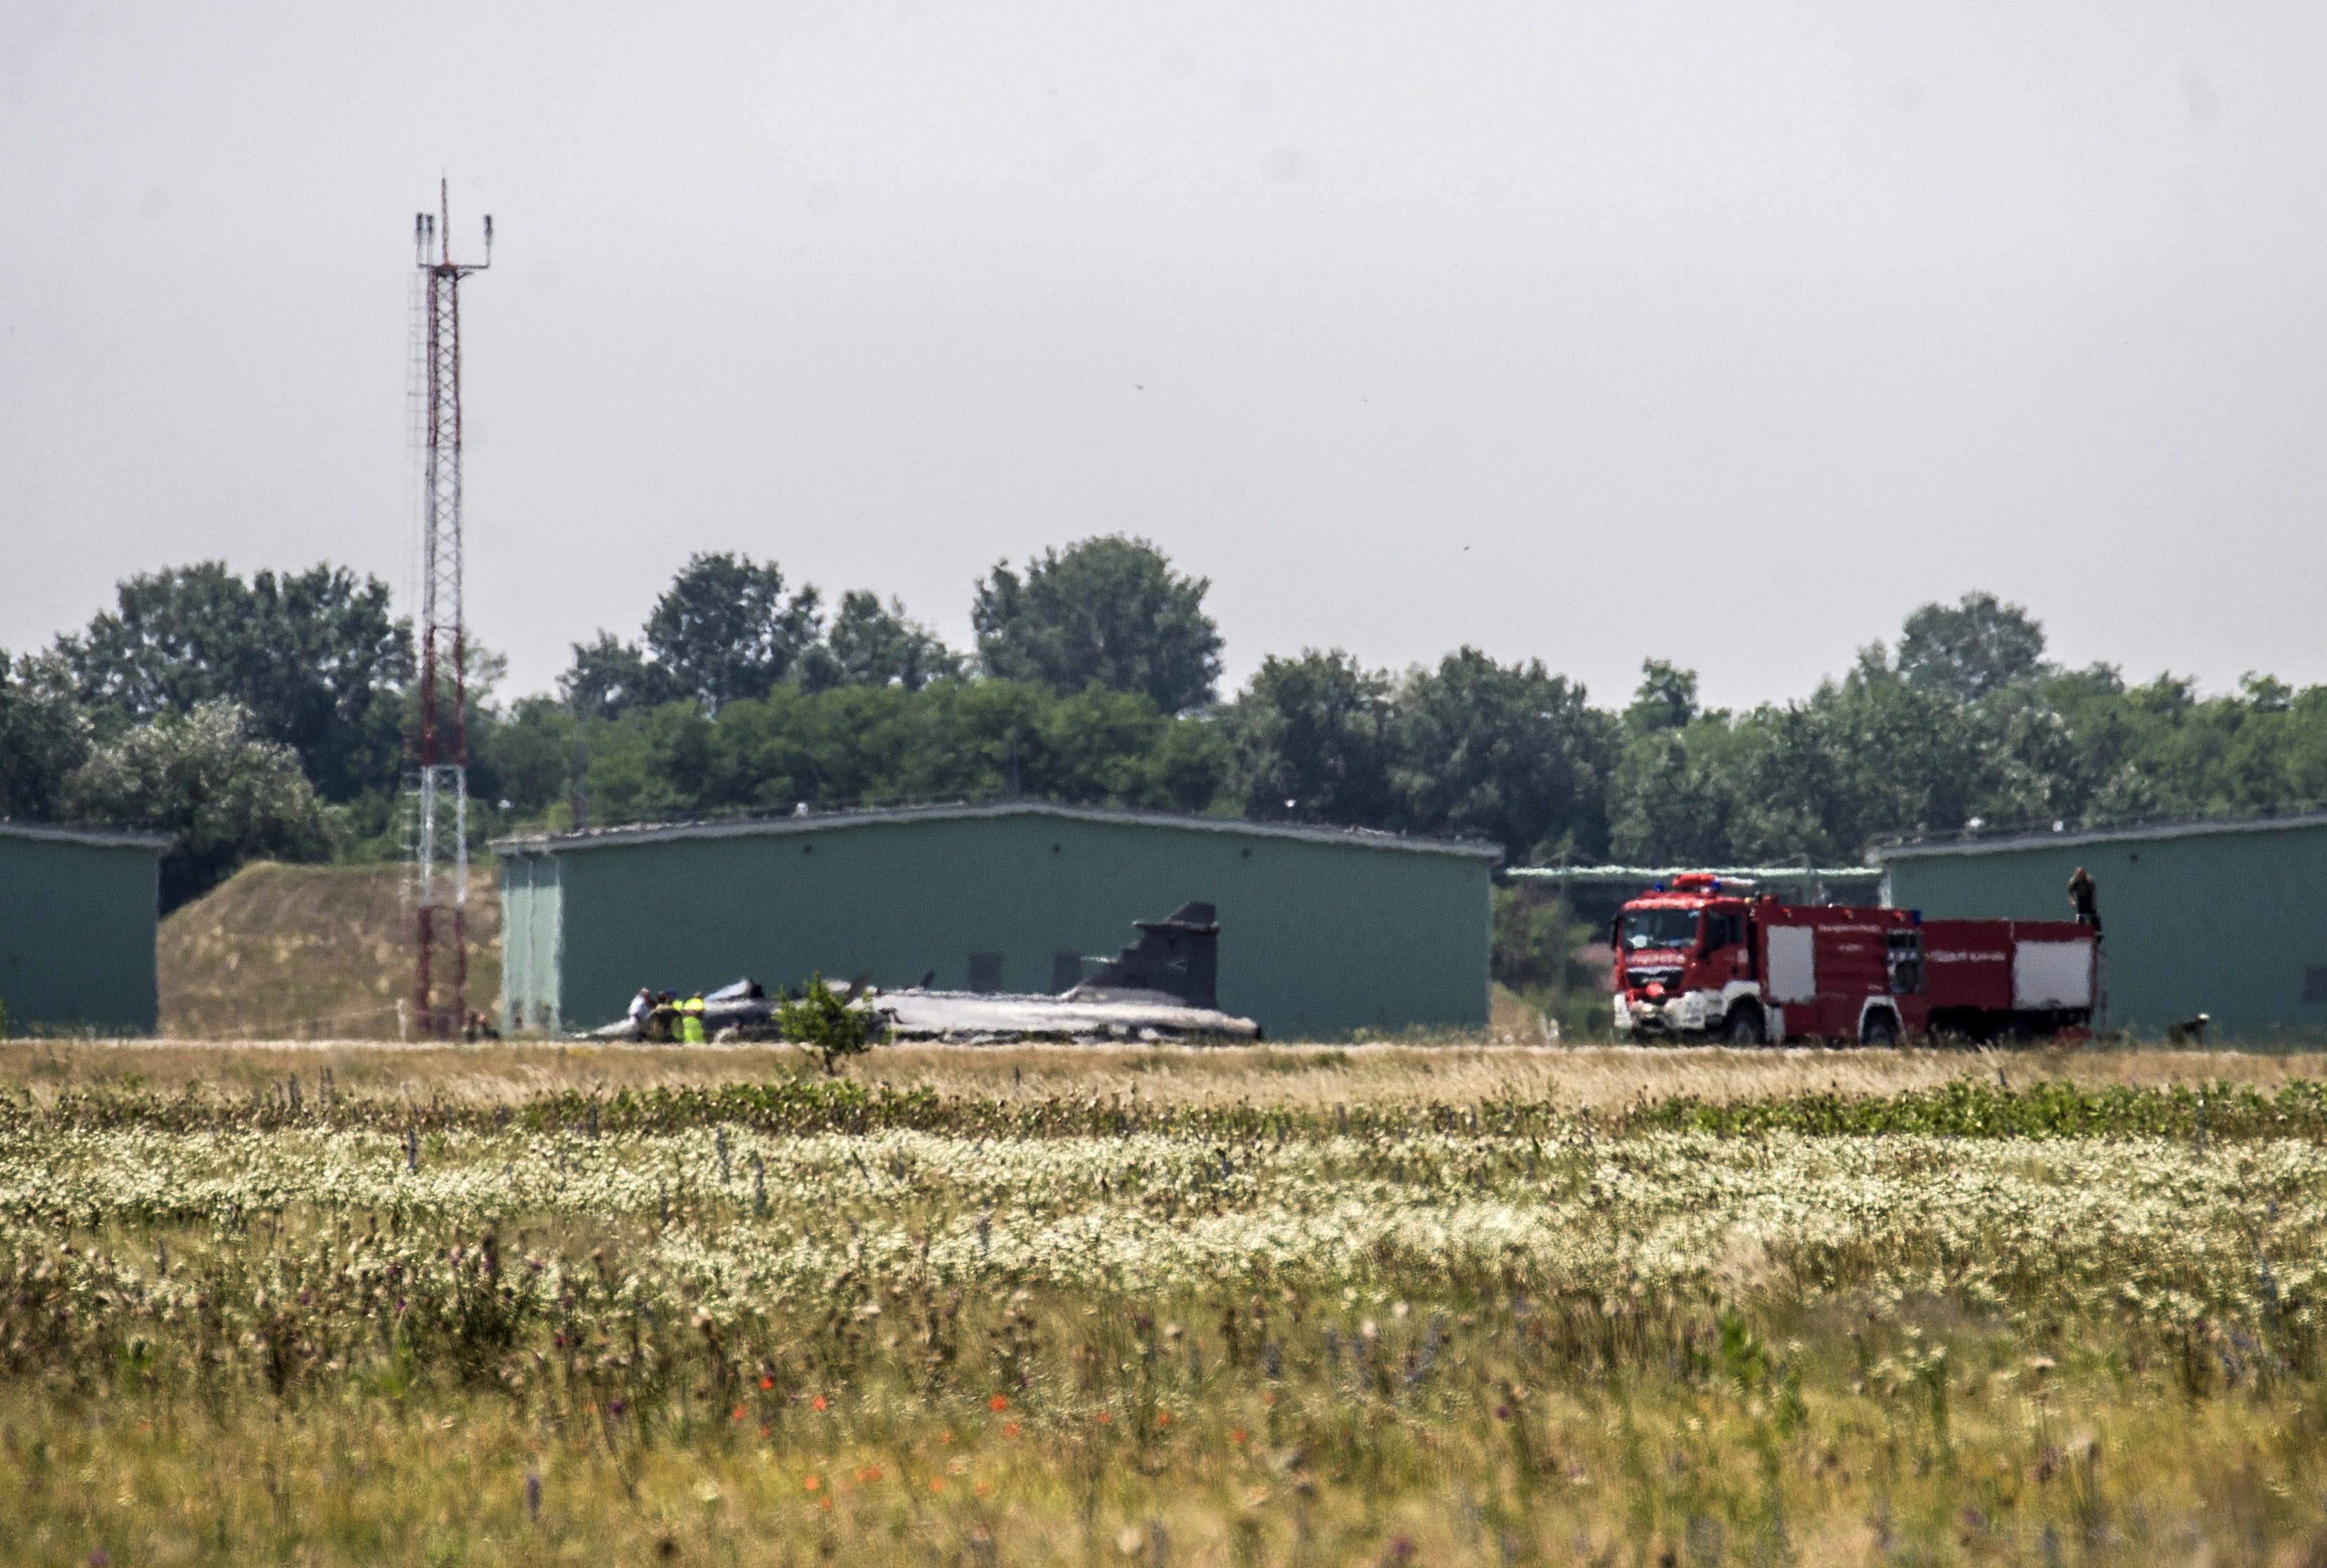 Kecskemét, 2015. június 10. A Magyar Honvédség JAS-39 C Gripen típusú, kényszerleszállást végrehajtott repülõgépe a kecskeméti katonai repülõtéren 2015. június 10-én. A gépen a felszállás után a repülést veszélyeztetõ mûszaki hiba lépett fel, ezért a pilóta megfelelõ biztosítás mellett 10 óra 52 perckor kényszerleszállást hajtott végre, és közben katapultált. A pilóta eszméleténél van, orvosok vizsgálják. MTI Fotó: Ujvári Sándor